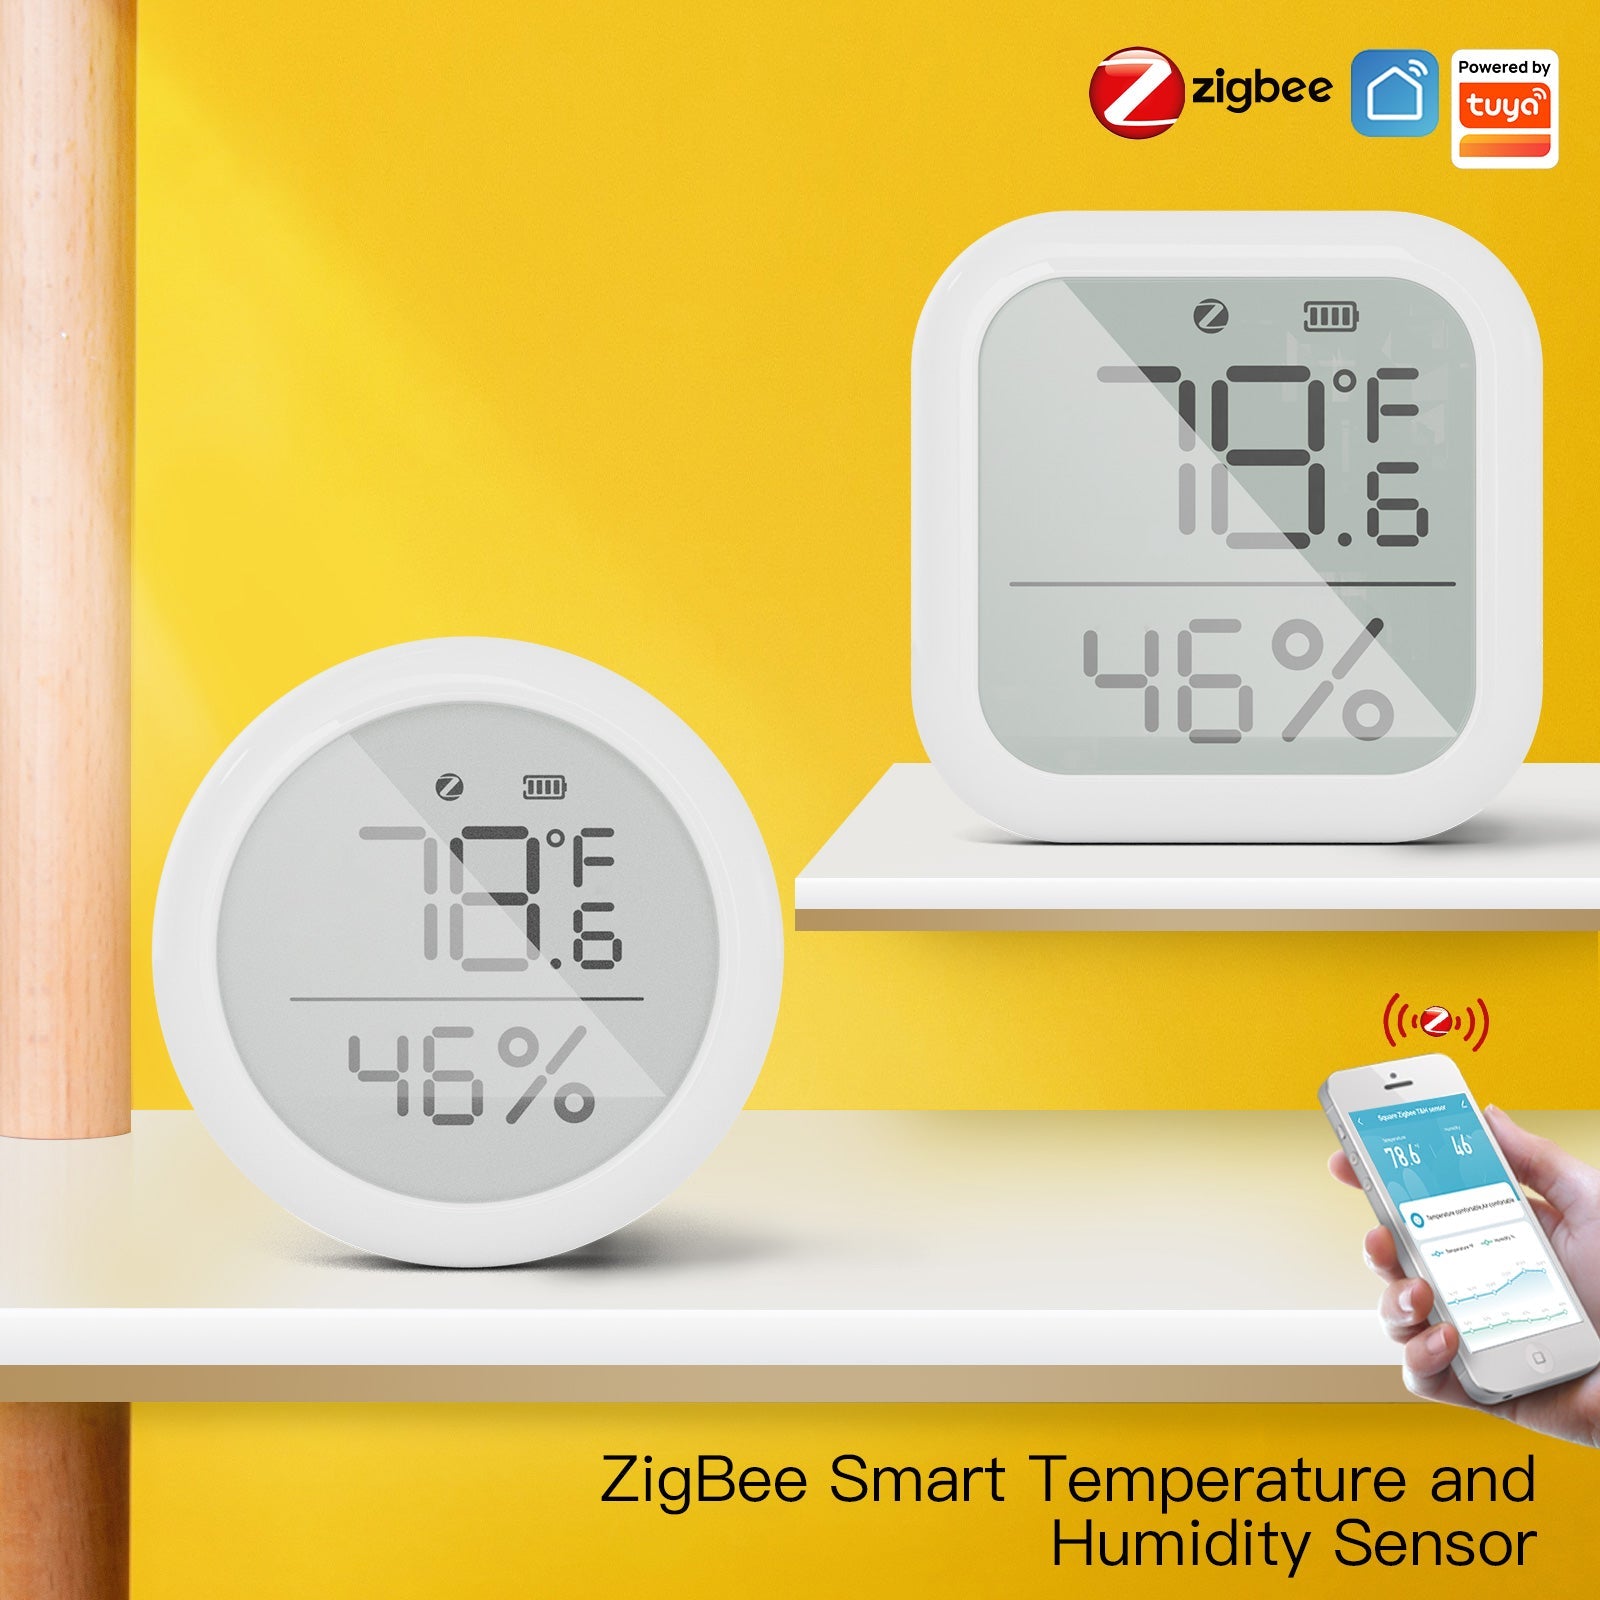 MOES ZigBee Smart Temperature and Humidity Sensor Indoor Hygrometer  Thermometer Detector